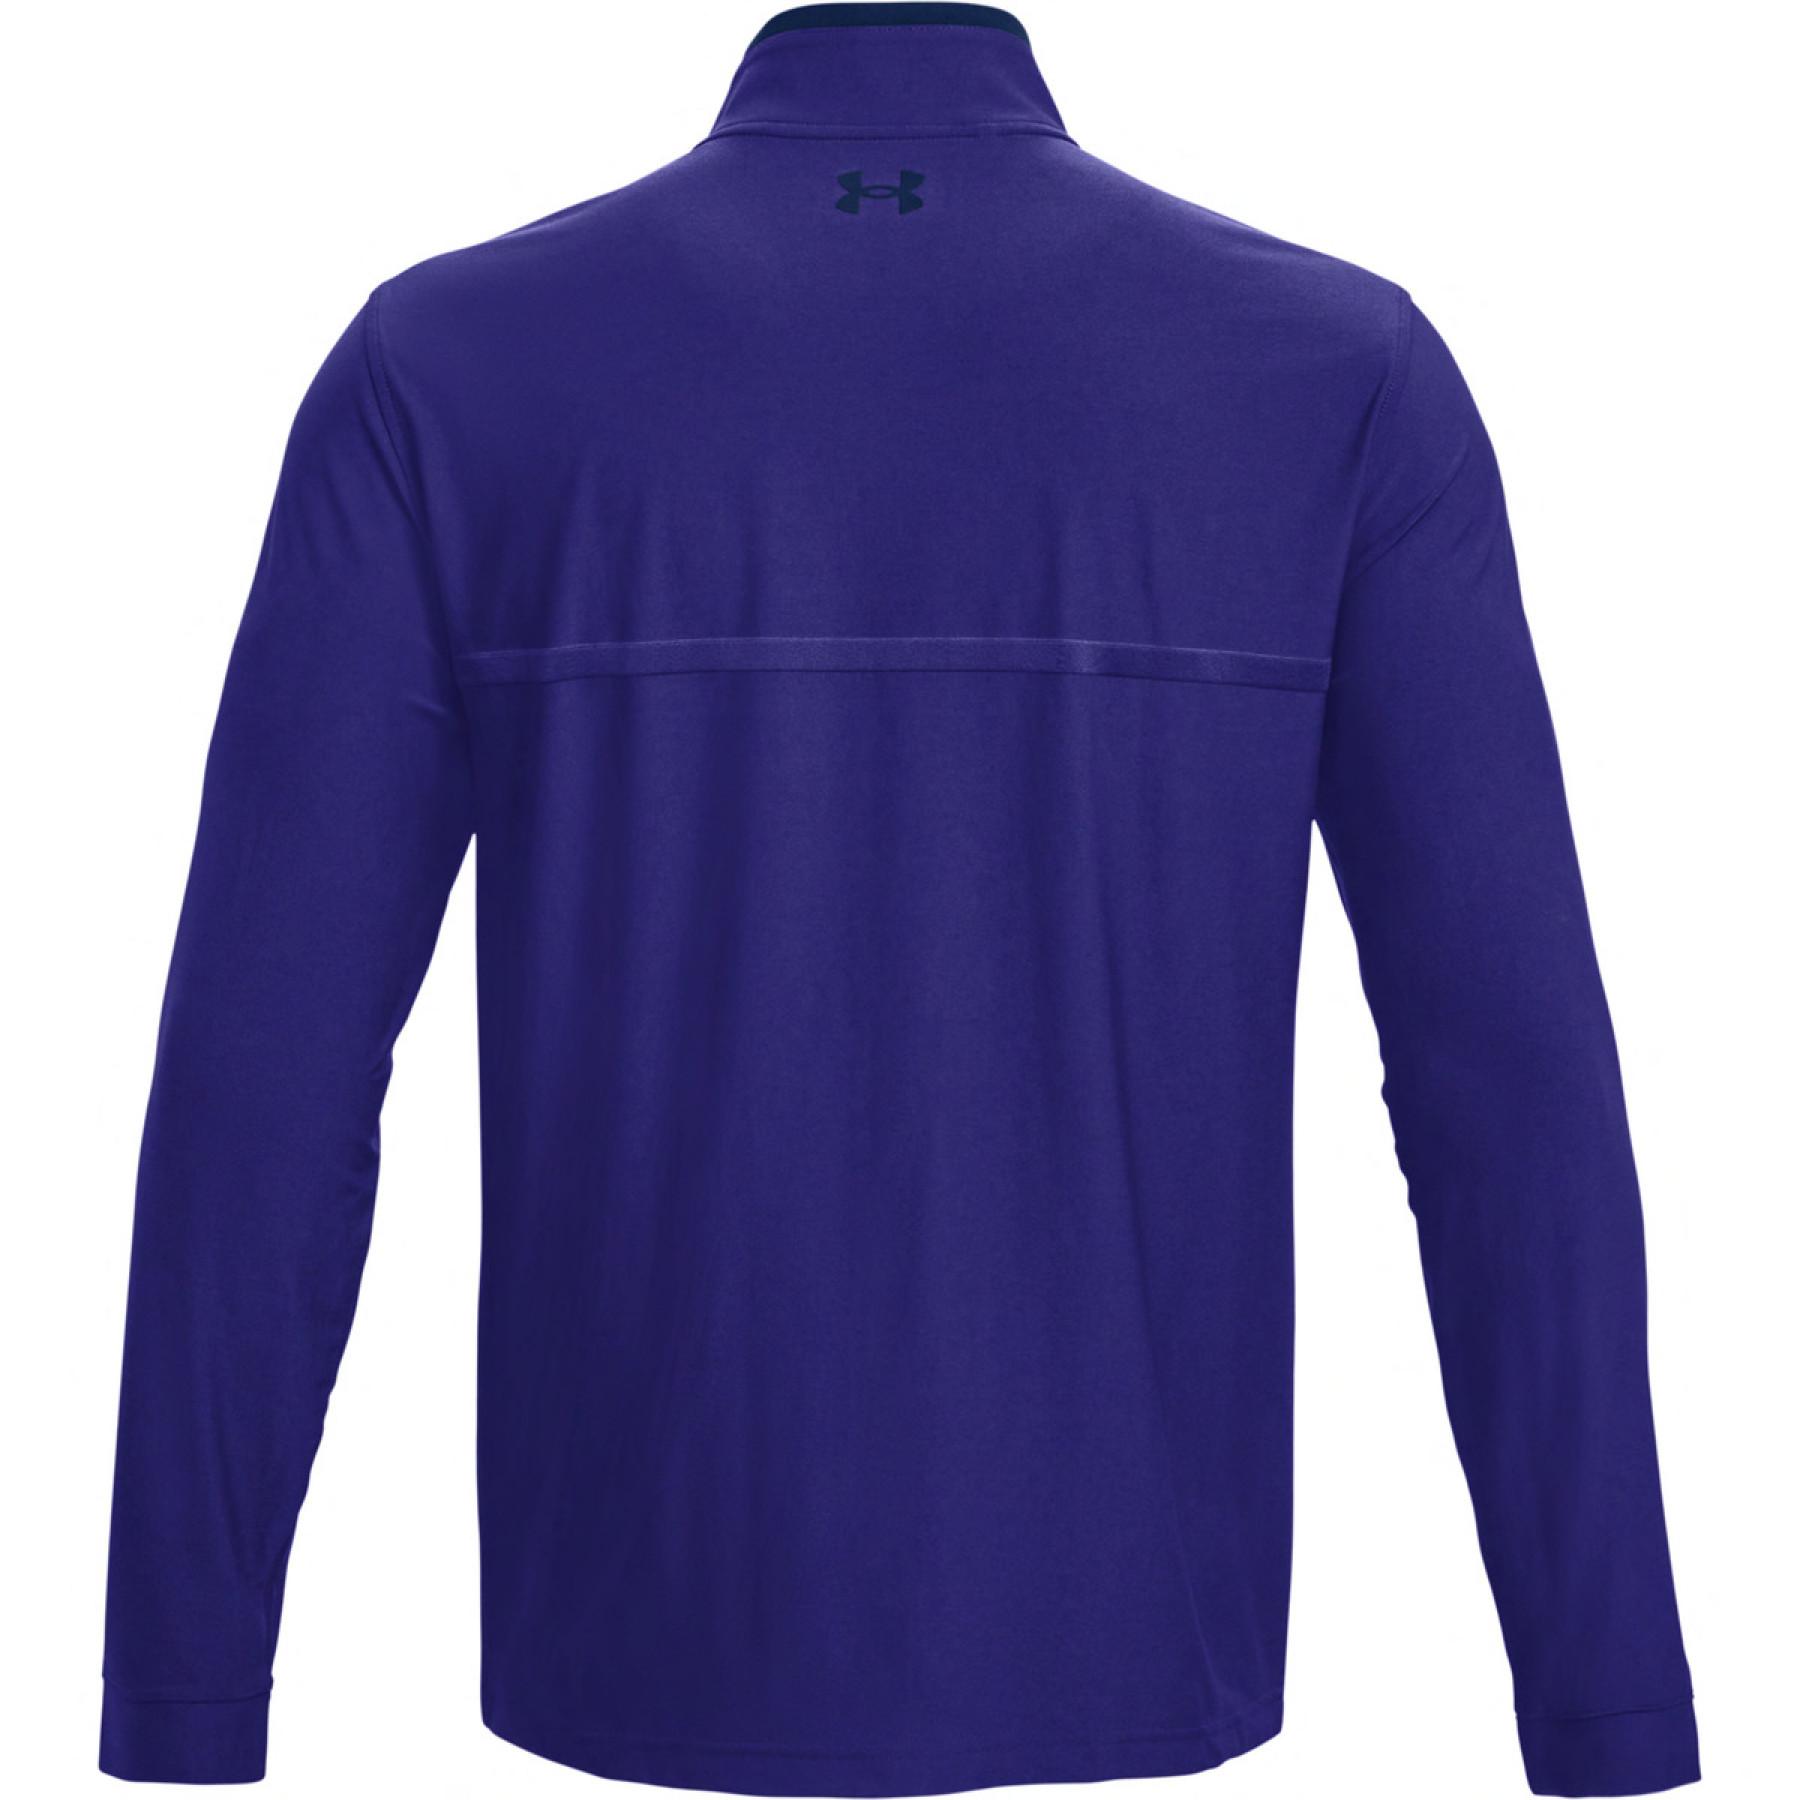 Sweatshirt Under Armour Playoff 2.0 ¼ Zip